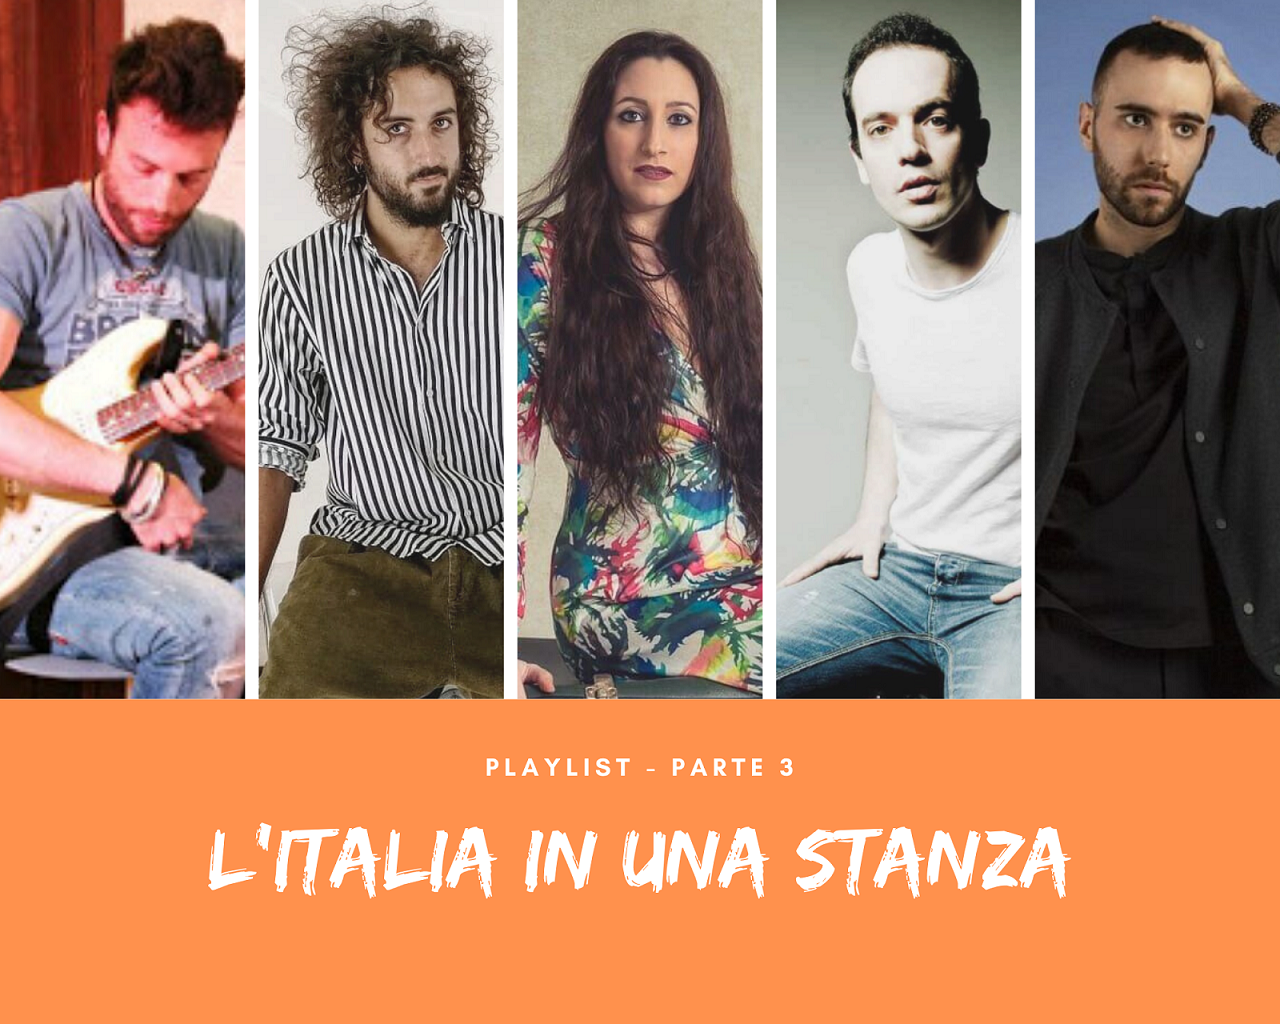 L'Italia in una stanza Stefano Scuro, Martino Adriani, Sara Marini, Saverio Martucci, Peligro